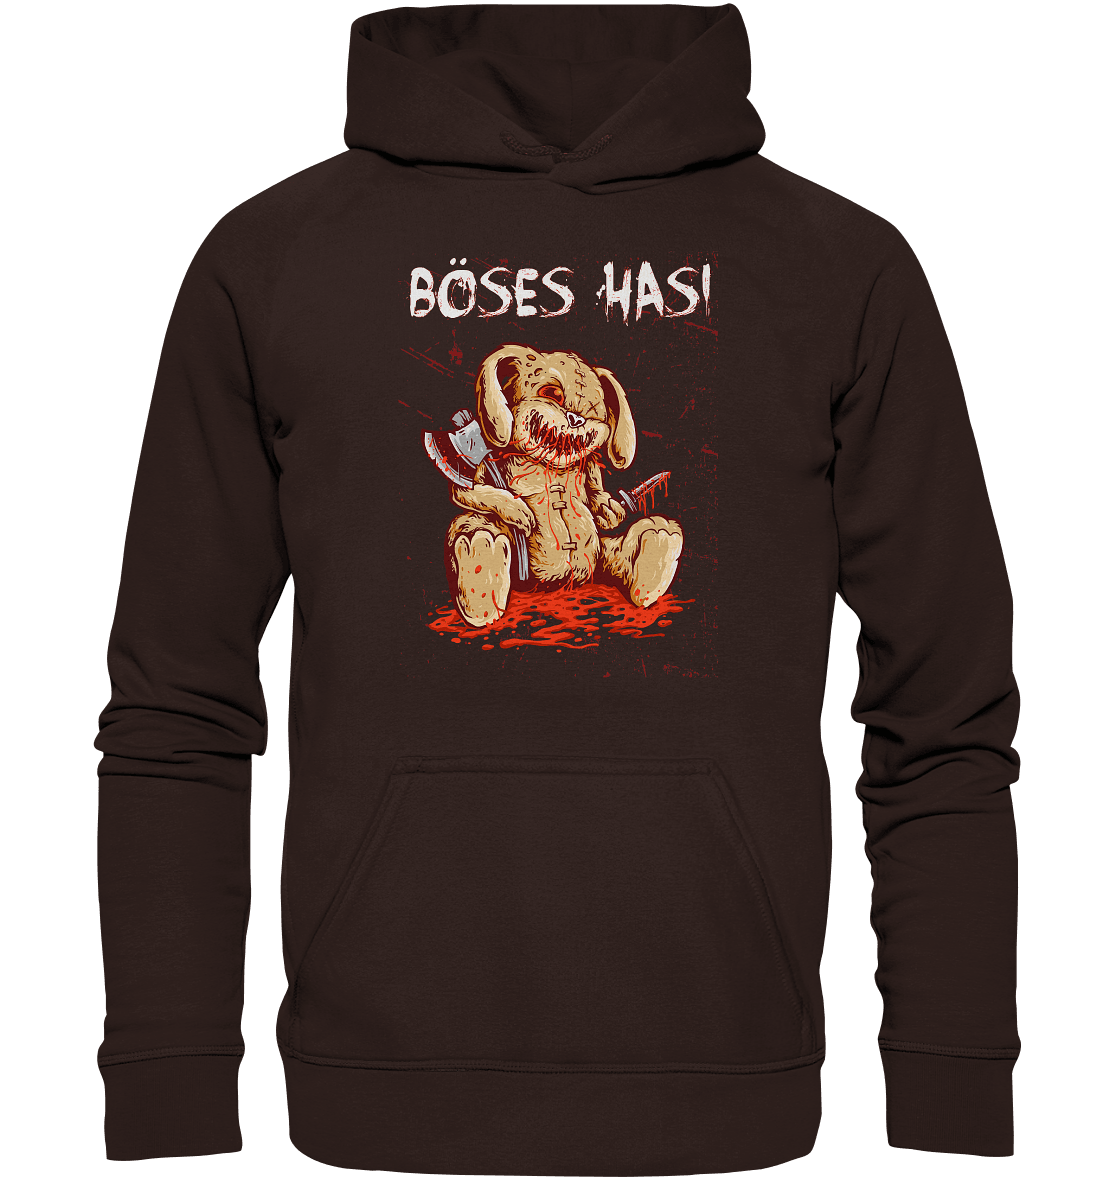 Böses Hasi - Hoodie - Totally Wasted